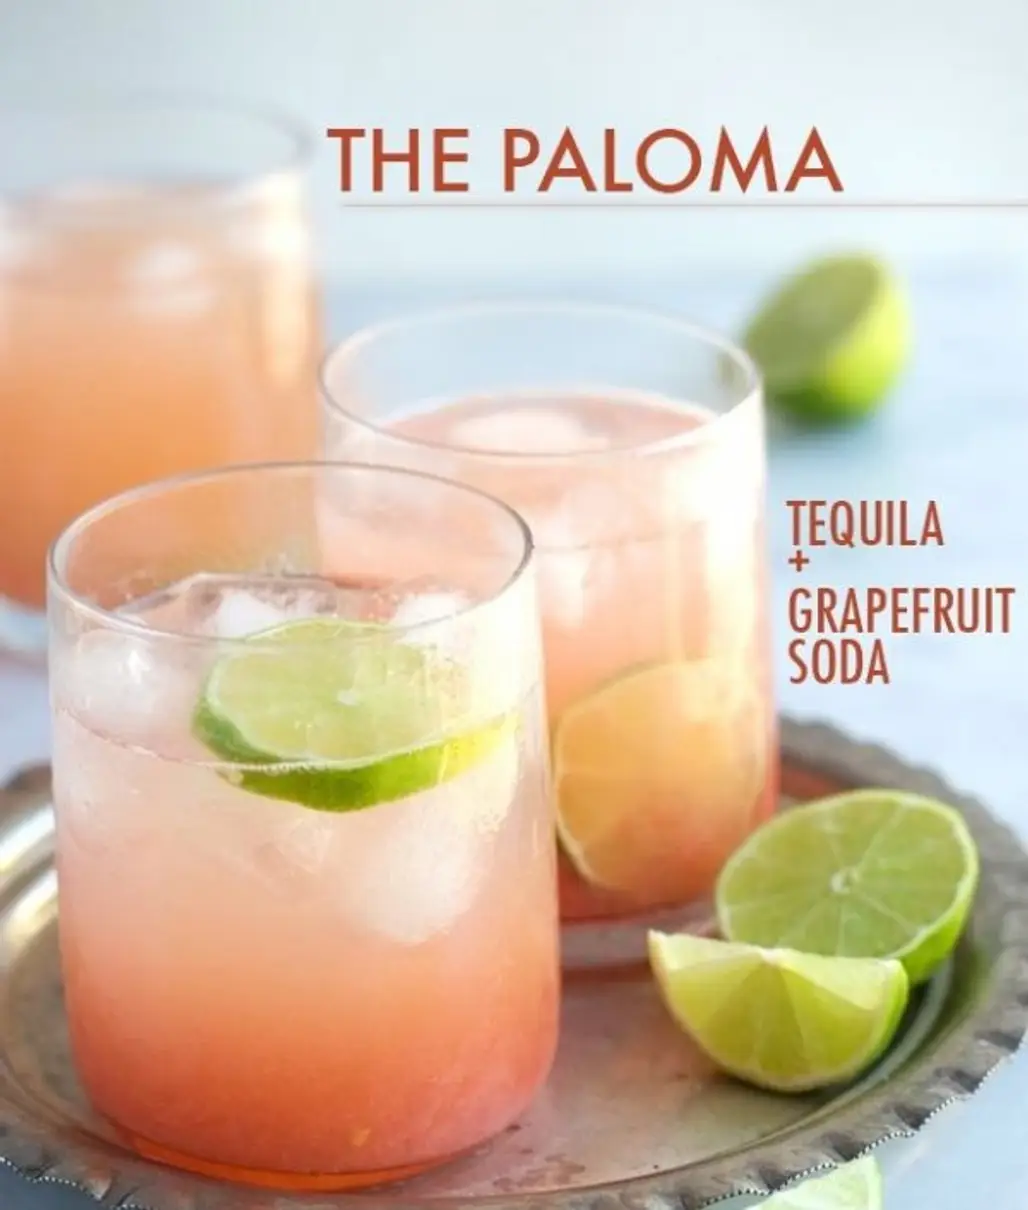 The Paloma